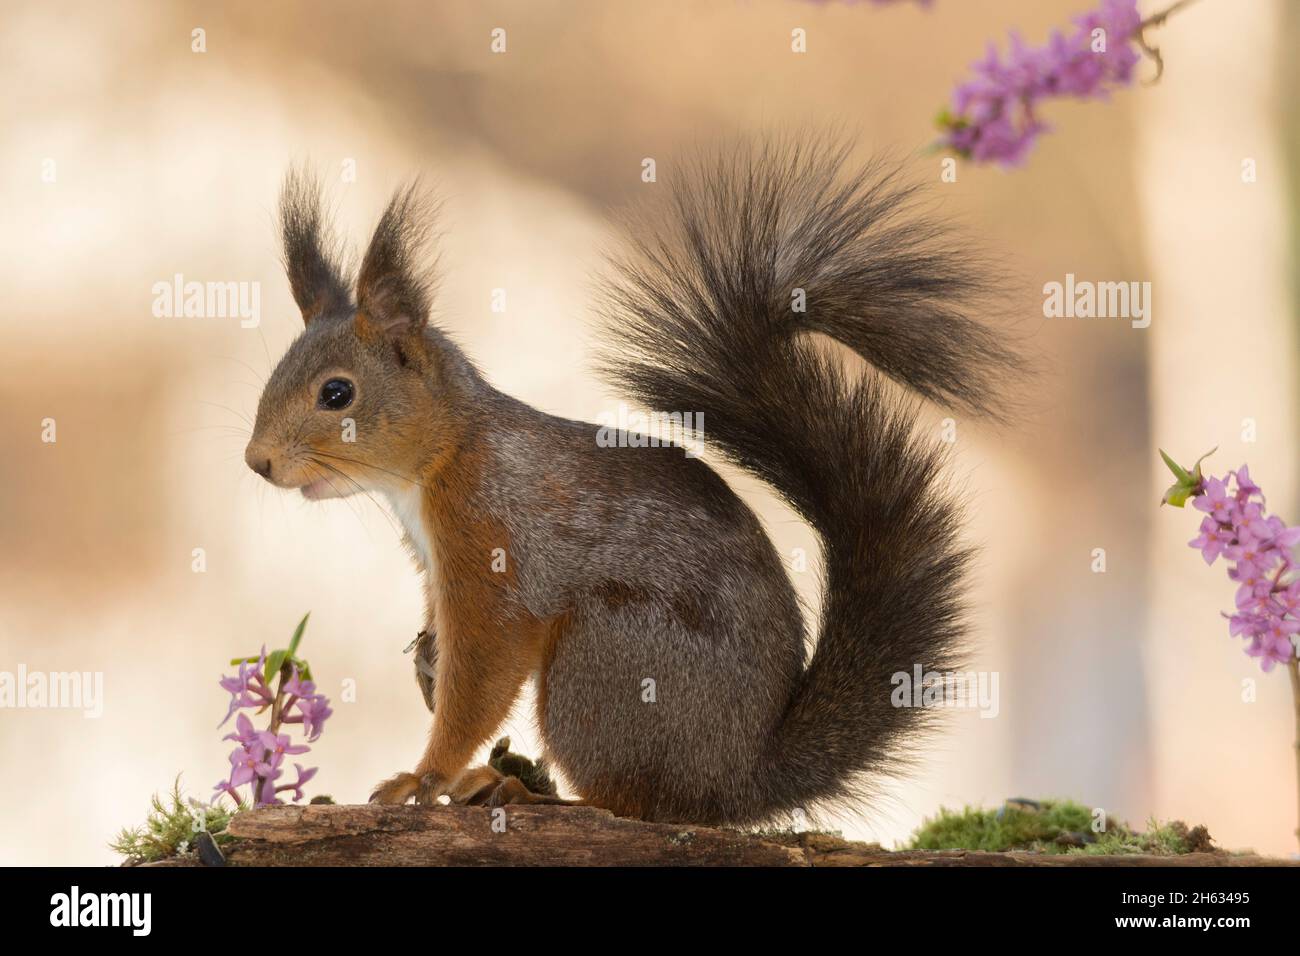 Profil und Nahaufnahme des roten Eichhörnchens zwischen den Blüten mit den Schwänzen nach oben Stockfoto